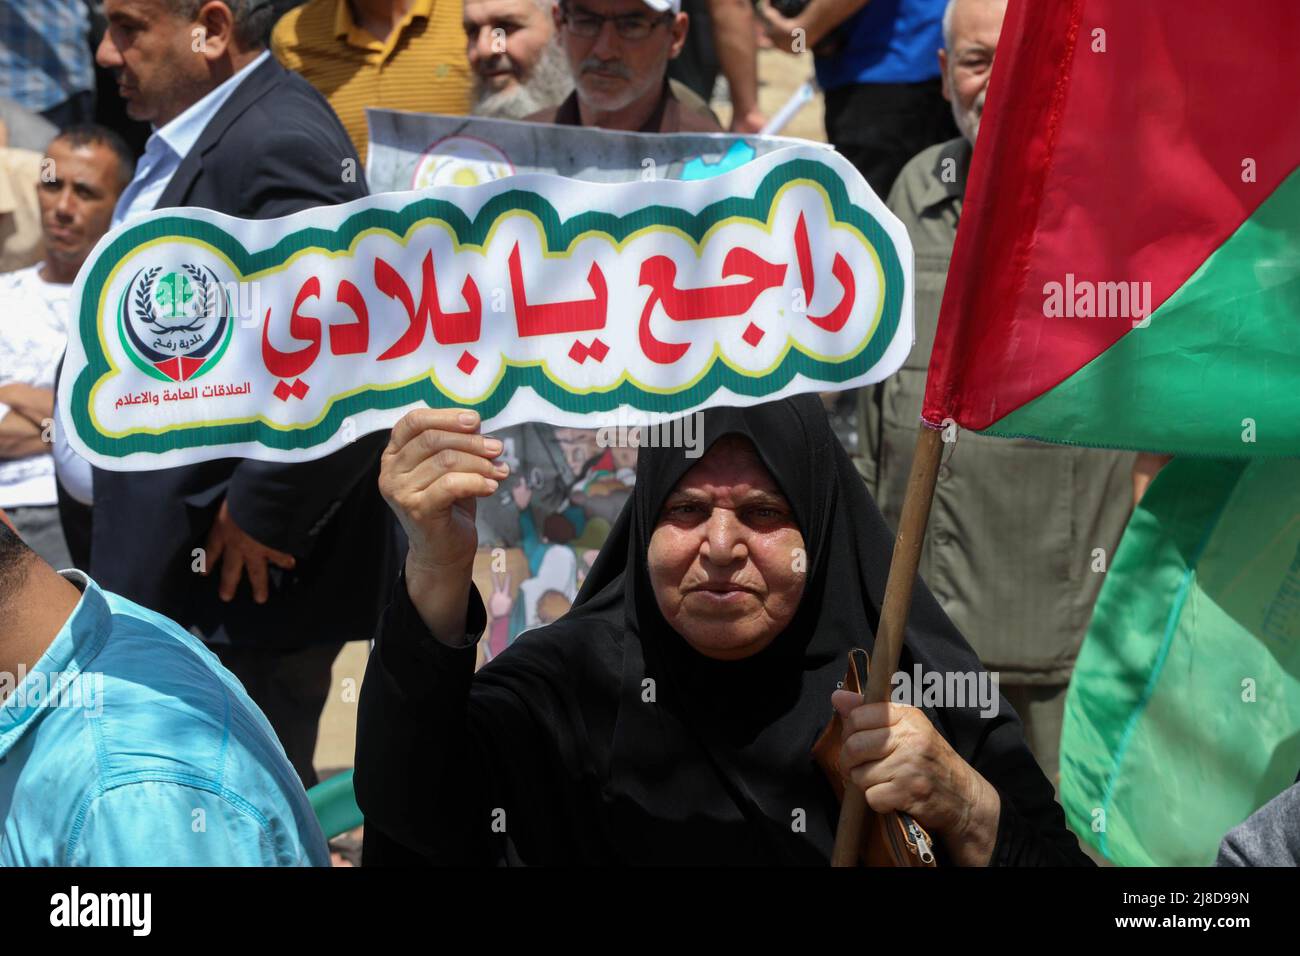 Una mujer palestina tiene un cartel que dice 'volveré a mi pueblo', ya que participa en un mitin que conmemora el 74th aniversario de Nakba, frente a las oficinas de la UNESCO en la ciudad de Gaza. Las facciones palestinas organizan un mitin cada 15th de mayo que marca lo que llaman la 'Nakba', o 'catástrofe', refiriéndose a su desarraigo en la guerra contra la creación de Israel en 1948. Foto de stock